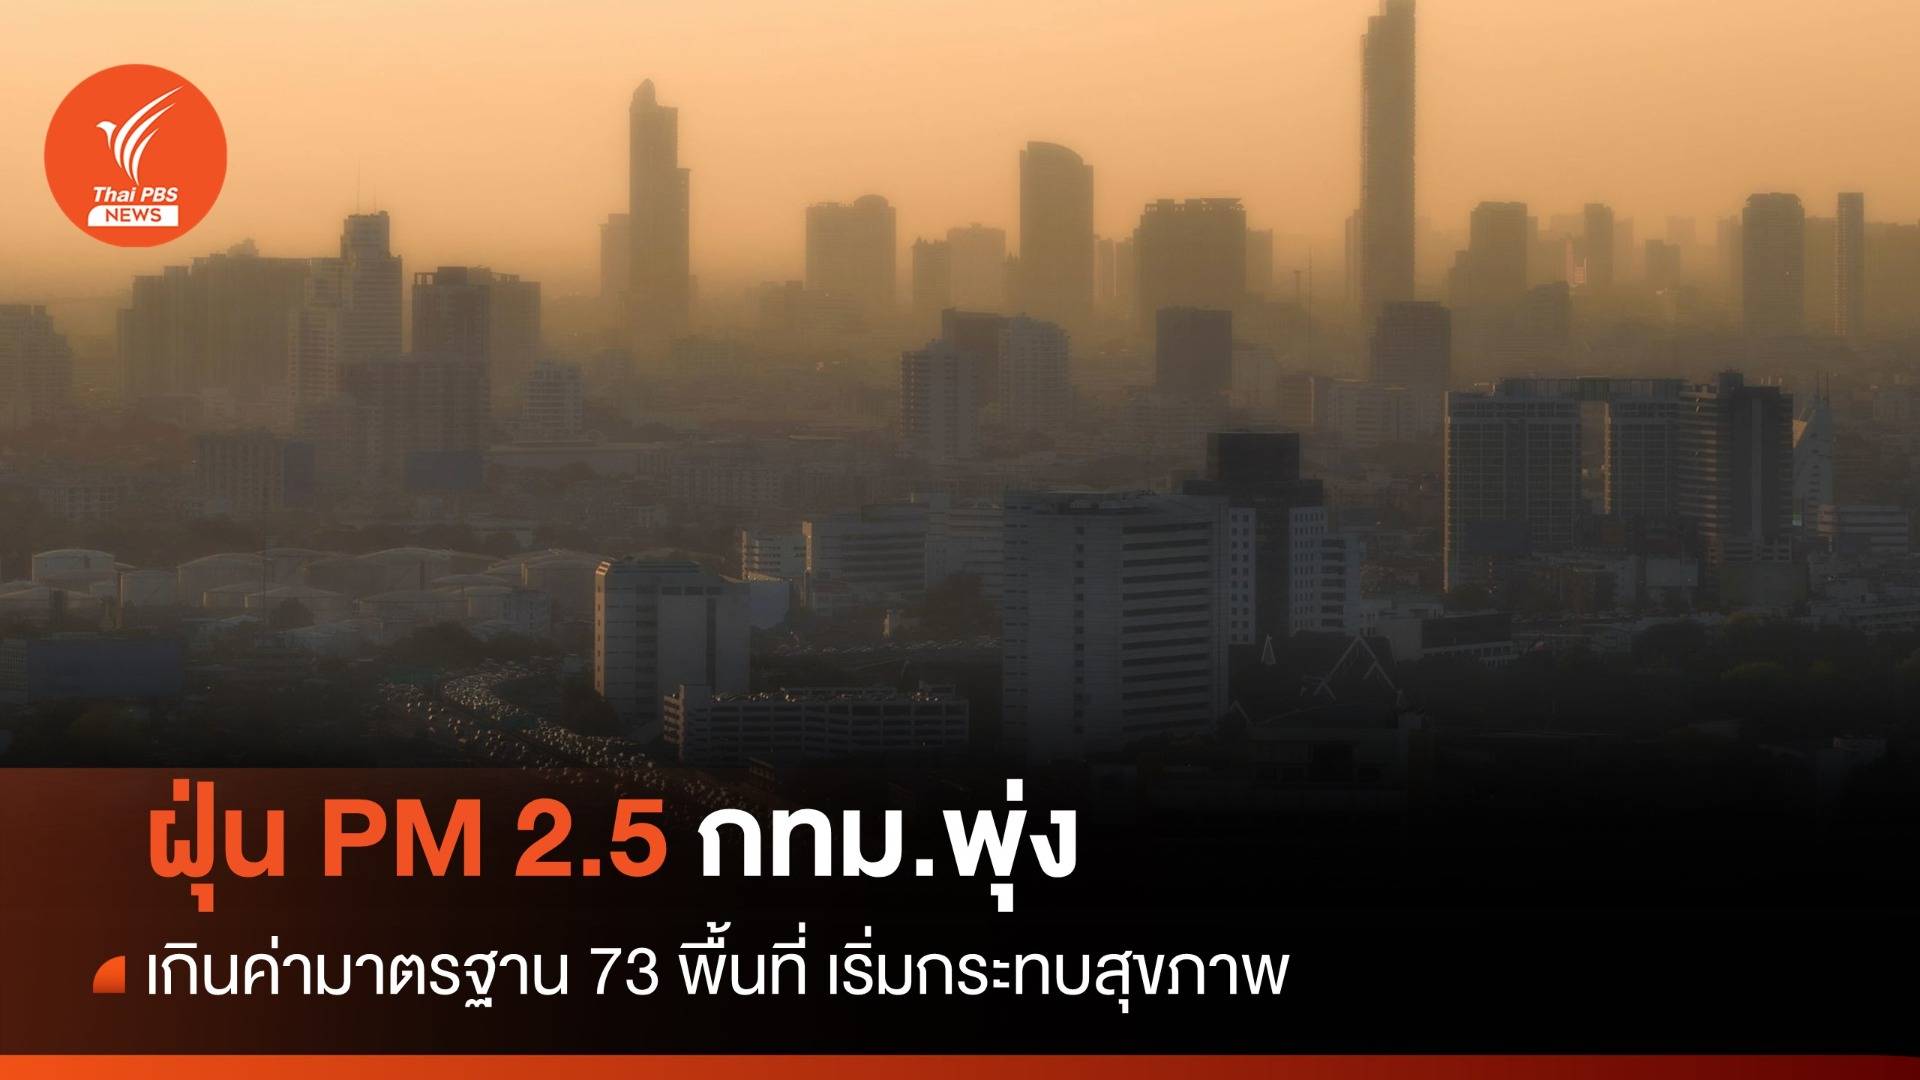 ฝุ่น PM 2.5 กทม.พุ่ง เกินค่ามาตรฐาน 73 พื้นที่ เริ่มกระทบสุขภาพ